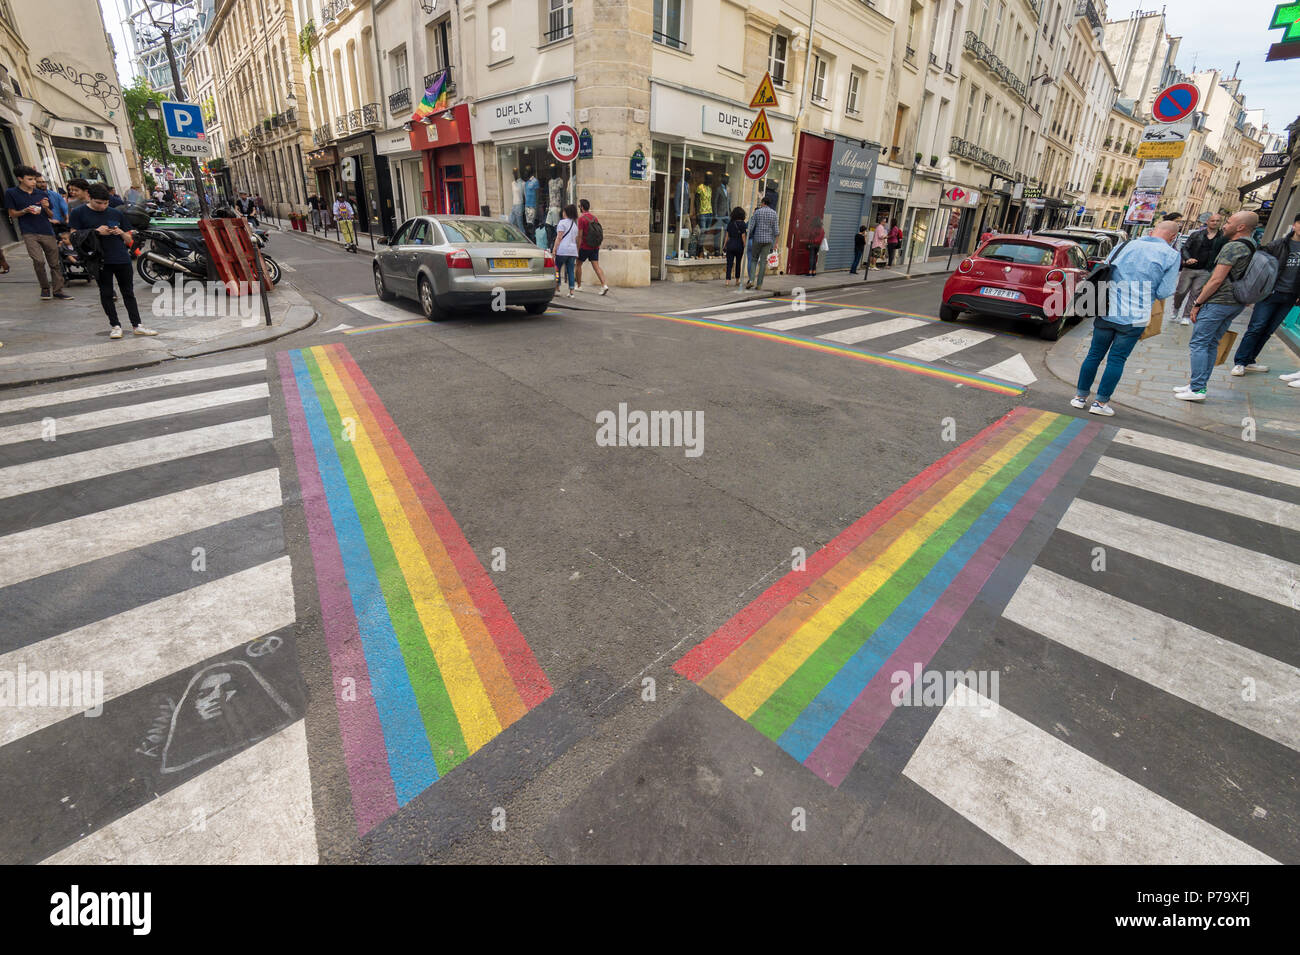 Paris, France - 24 June 2018: Gay pride flag crosswalks in Paris gay village (Le Marais) Stock Photo